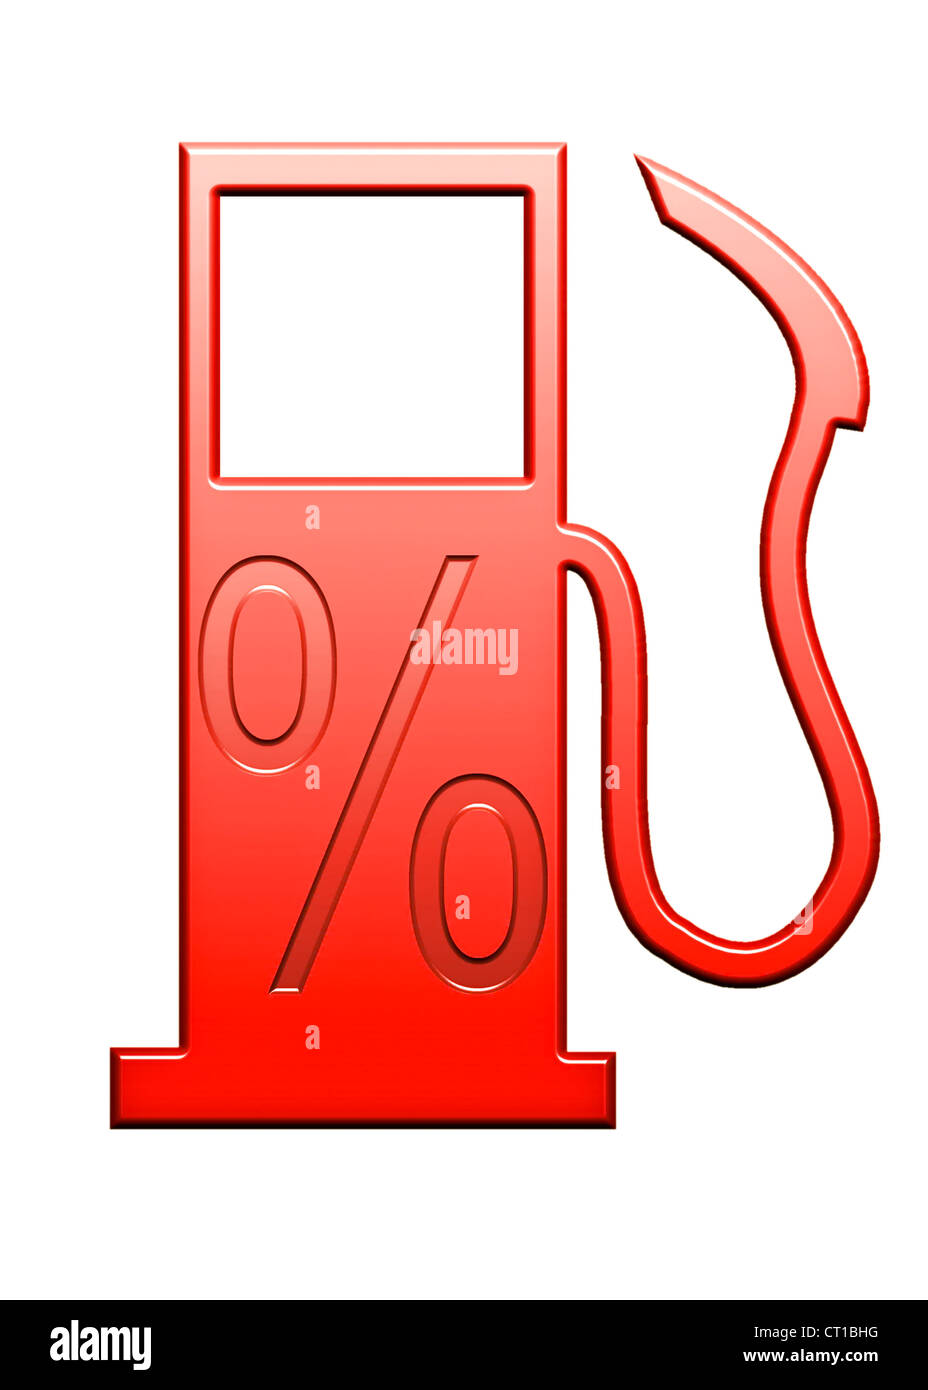 Signe de pourcentage sur une pompe à essence symbolique Banque D'Images